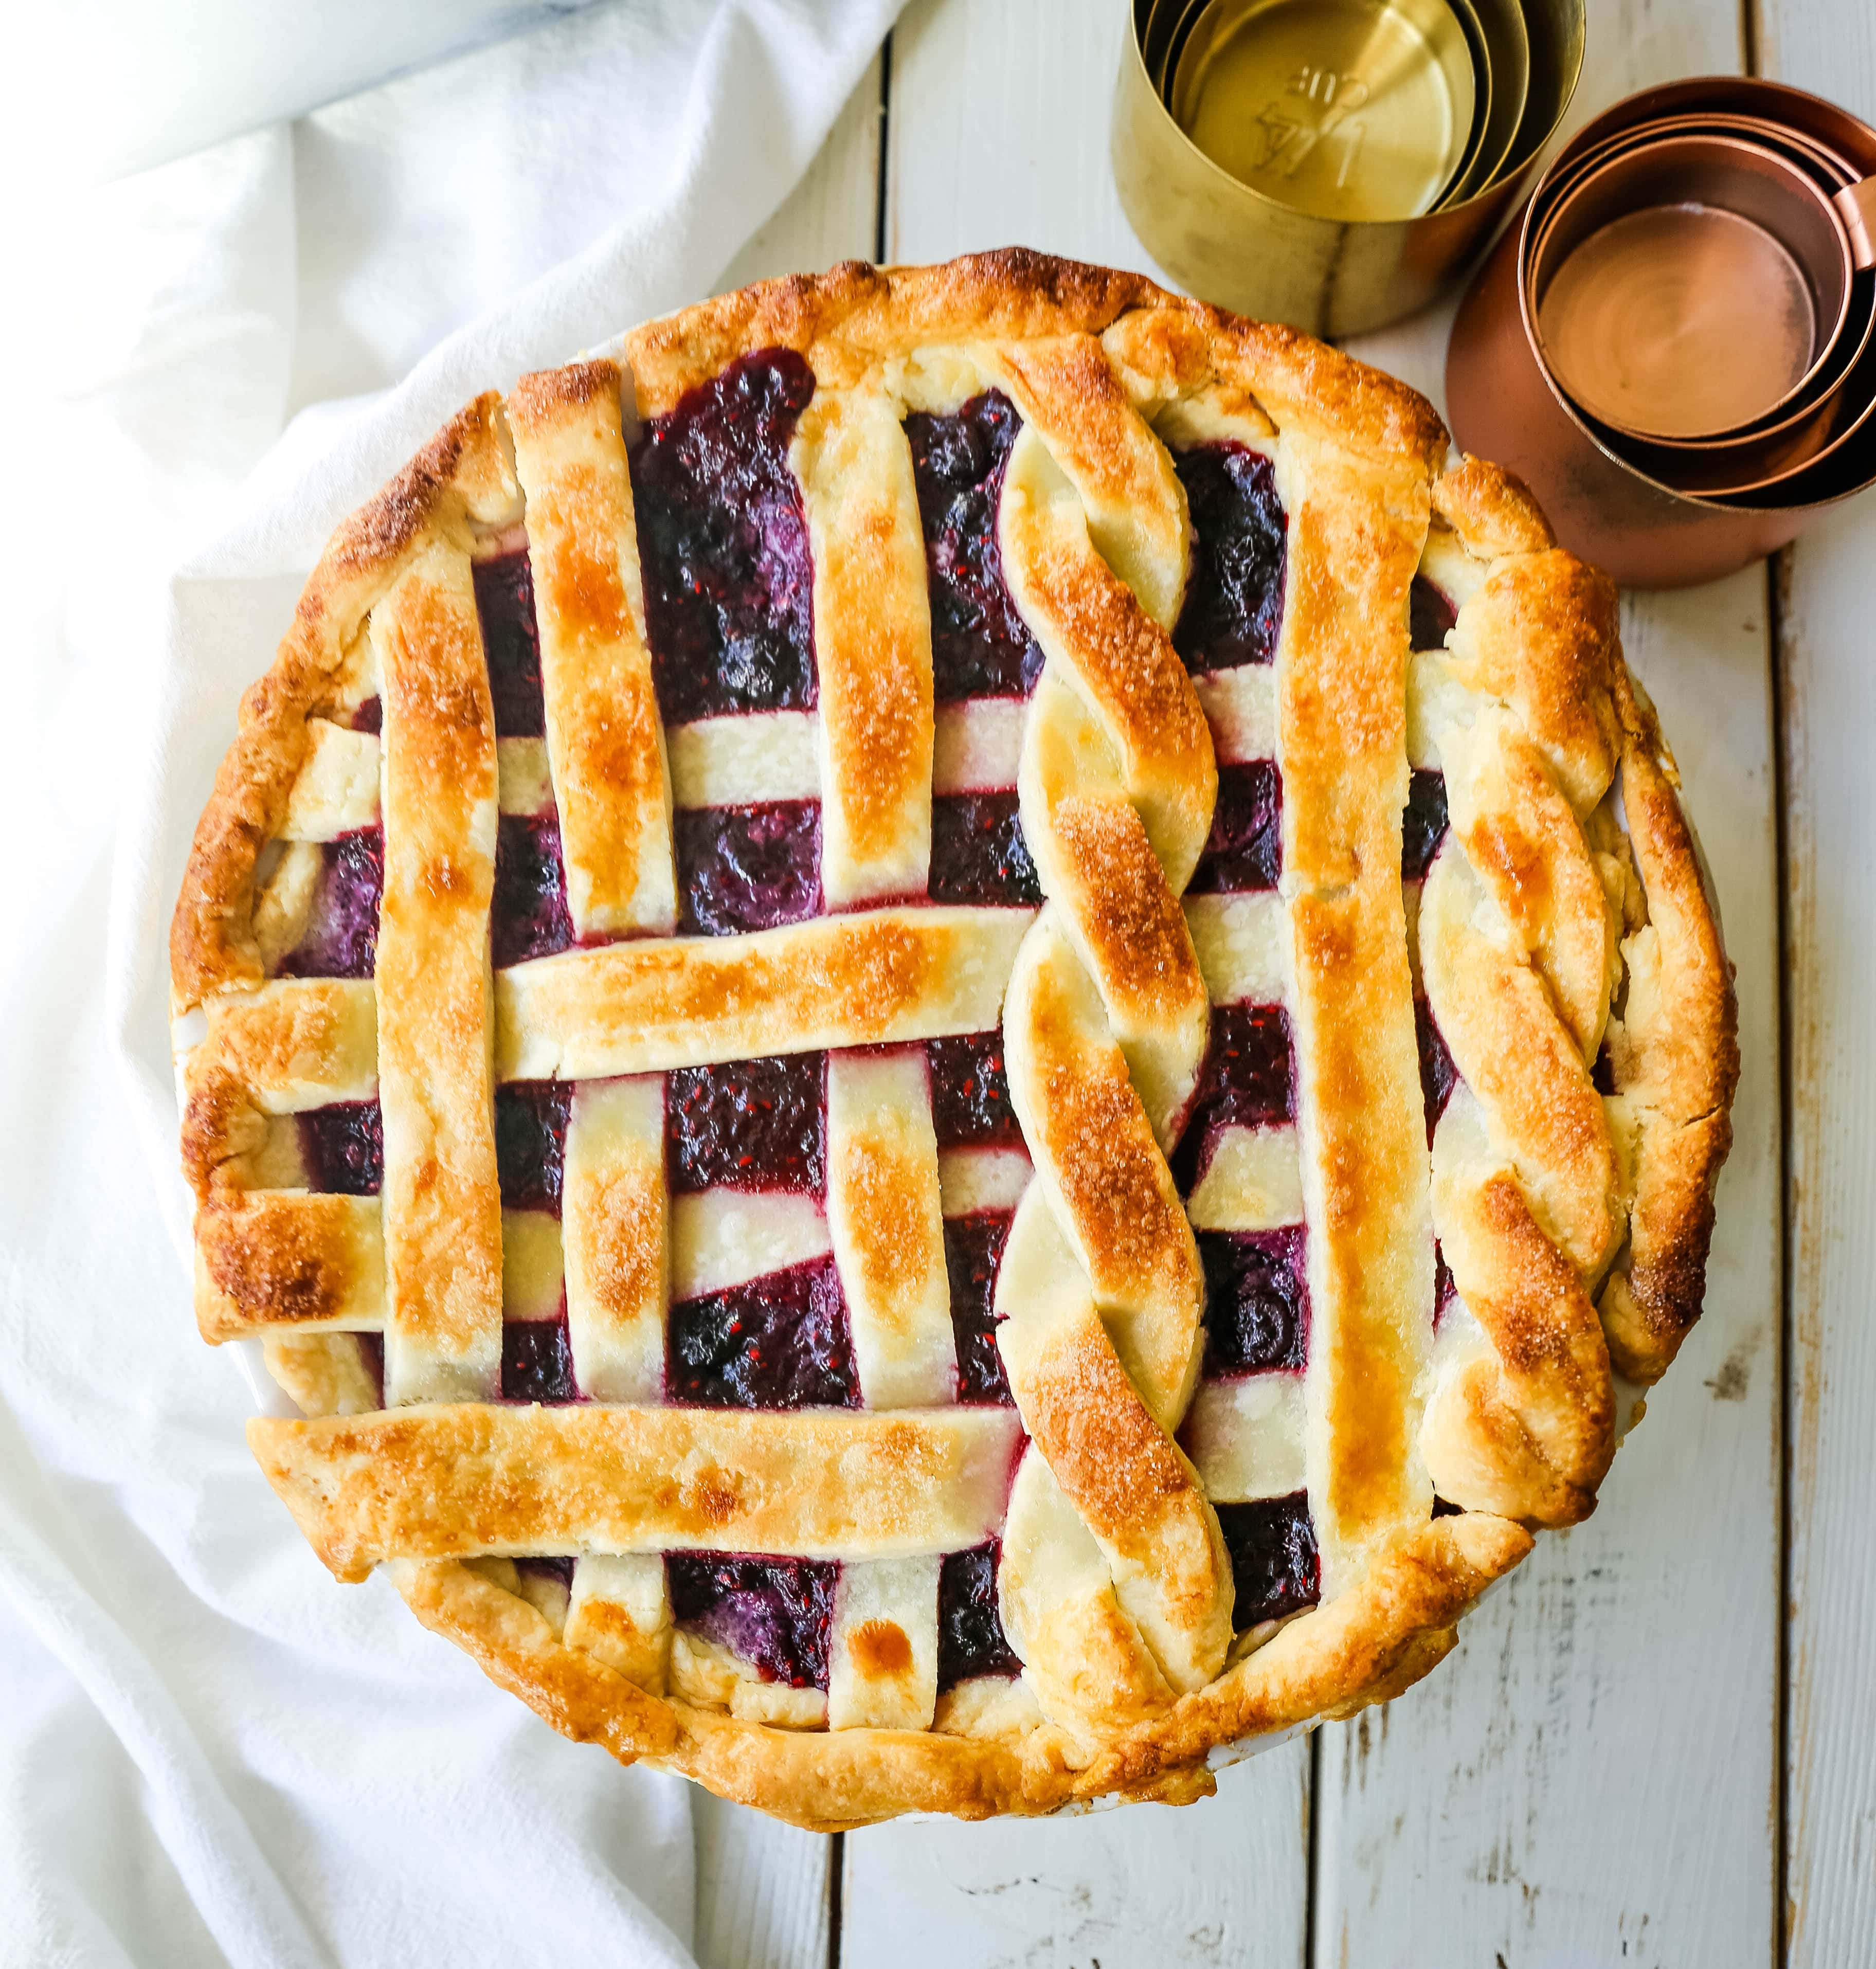 Dreifach-Beerenkuchen. Das beste hausgemachte Beerenkuchenrezept mit einer buttrigen Kuchenkruste. Toppen Sie es mit Vanilleeis und Sie haben das perfekte Beeren-Dessert! Das beste Beerenkuchen-Rezept. www.modernhoney.com #berrypie #pie #berries #tripleberrypie #thanksgiving